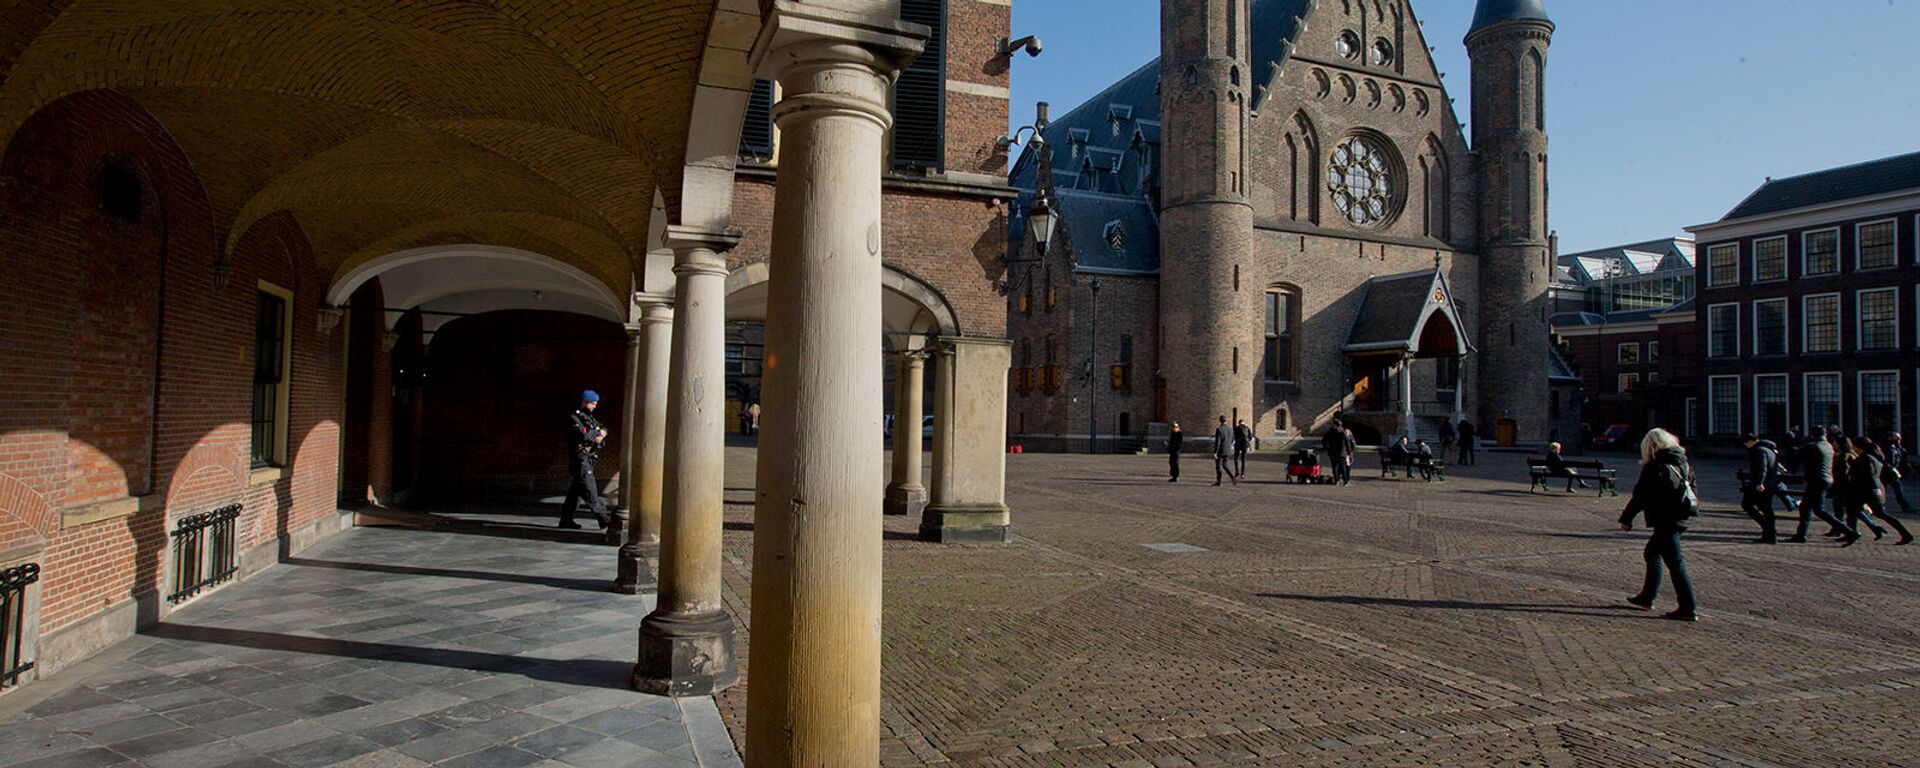 Рыцарский зал (справа), находится среди зданий парламента и Сената на Бинненхофе в Гааге, Нидерланды - Sputnik Արմենիա, 1920, 23.02.2021